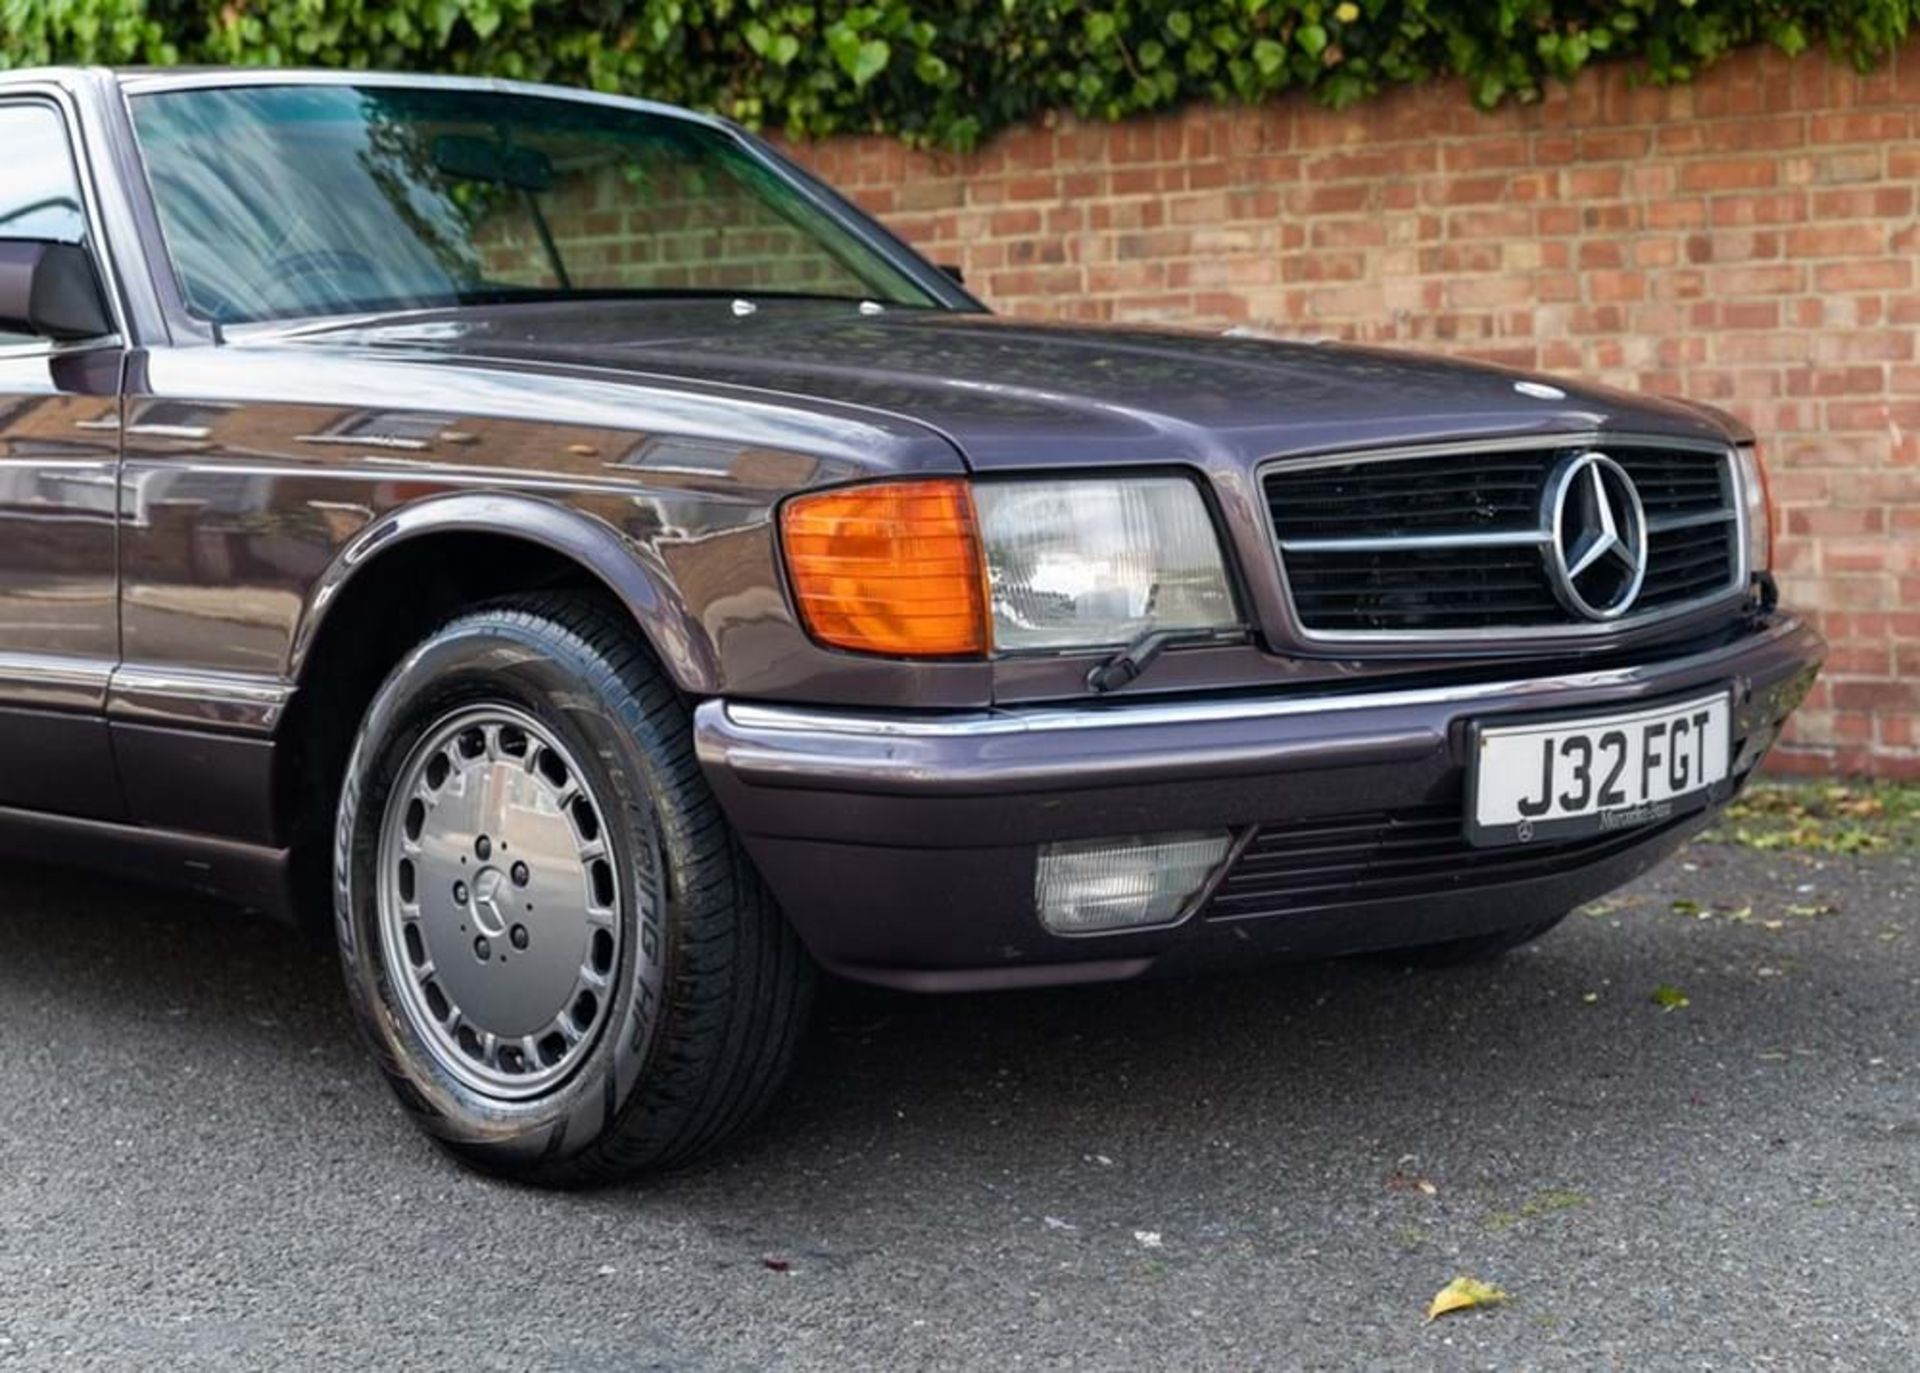 1992 Mercedes-Benz 500 SEC - Image 2 of 9